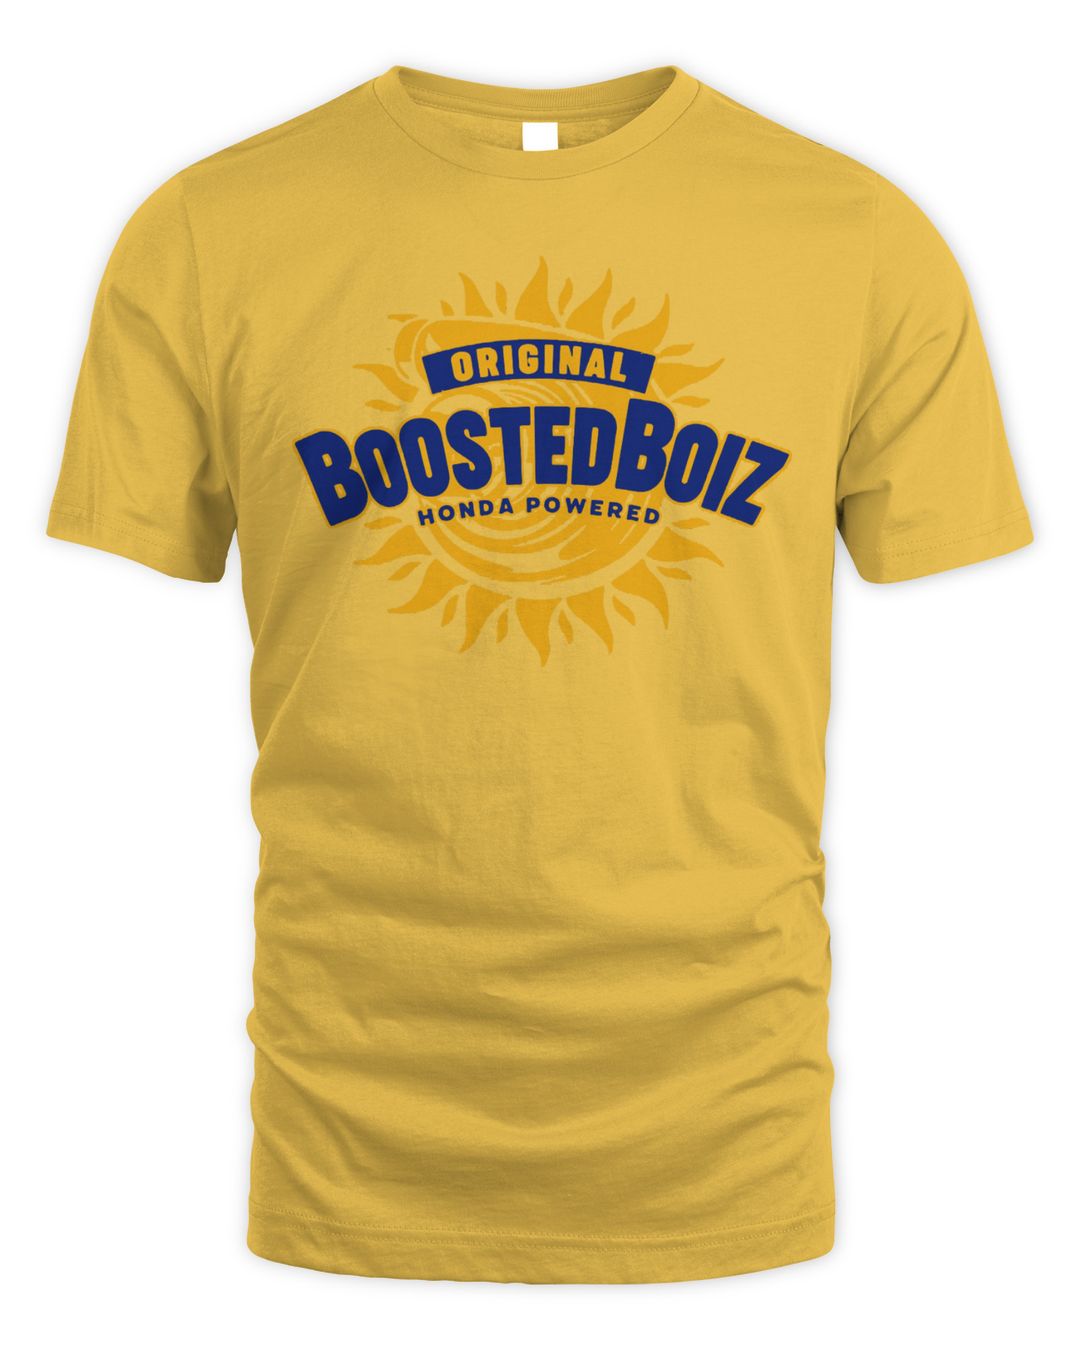 Boostedboiz Merch Keep It Boosted Shirt